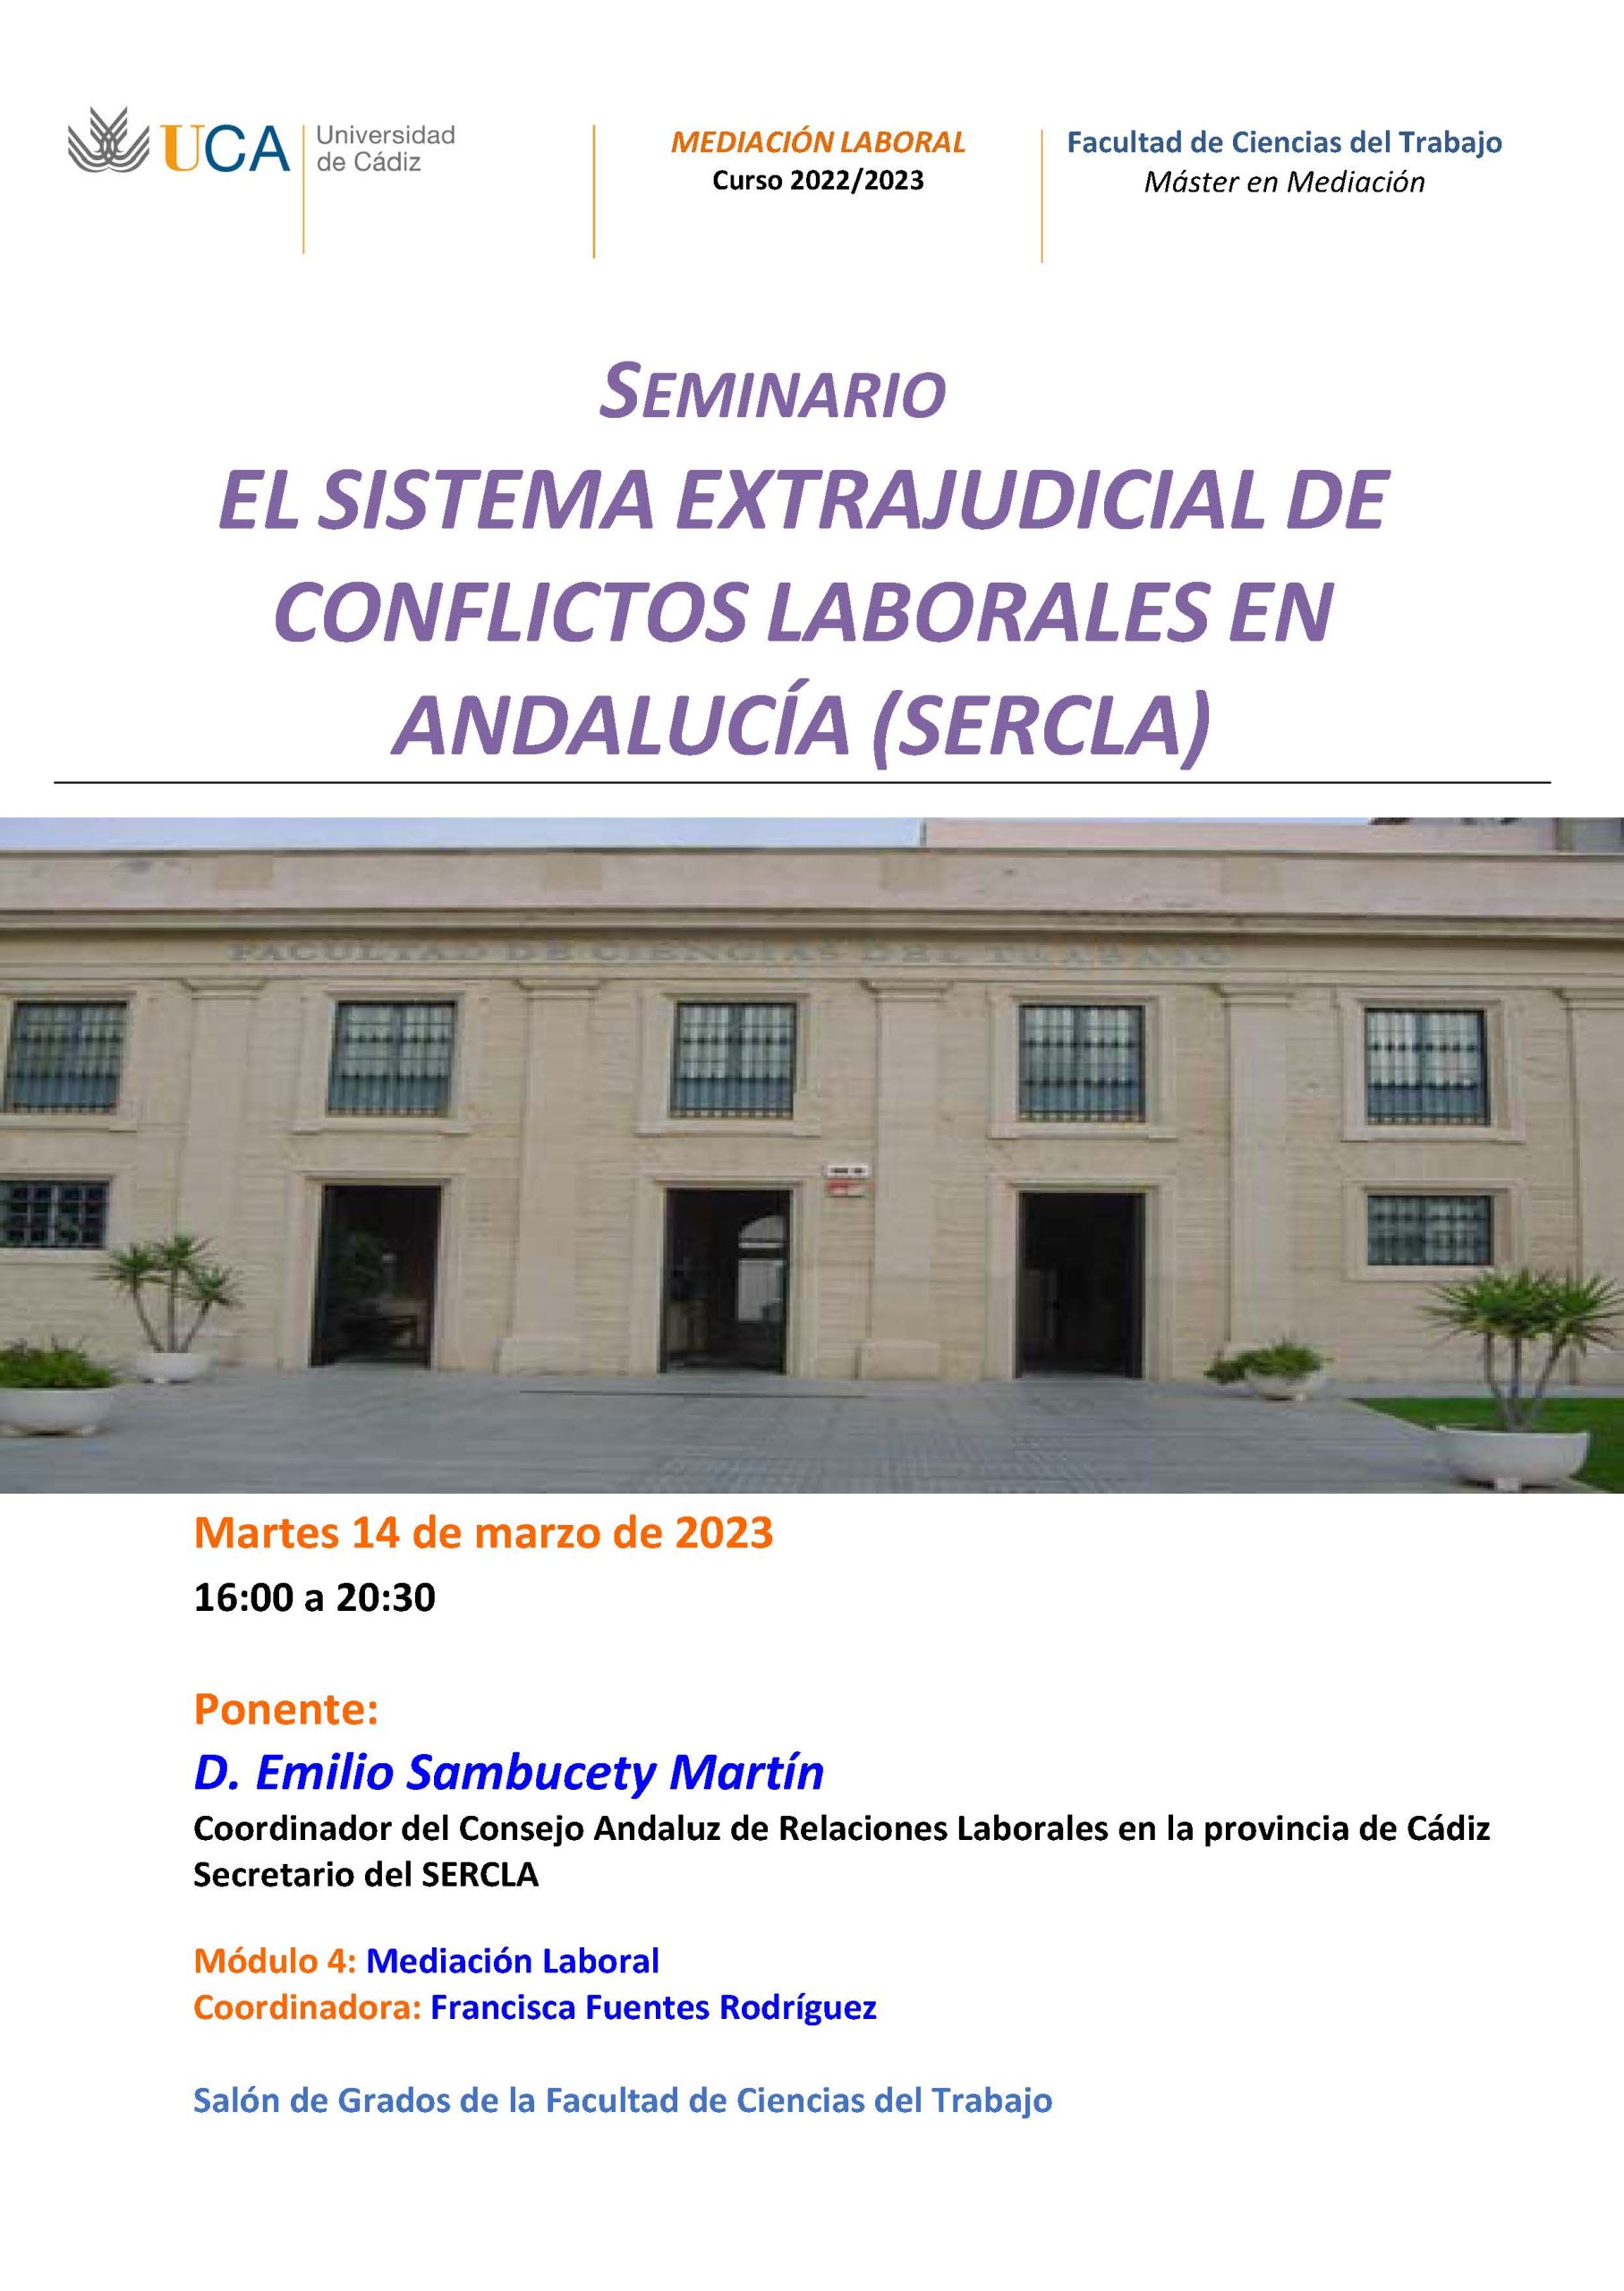 Seminario “El Sistema Extrajudicial de Conflictos Laborales en Andalucía” (SERCLA)